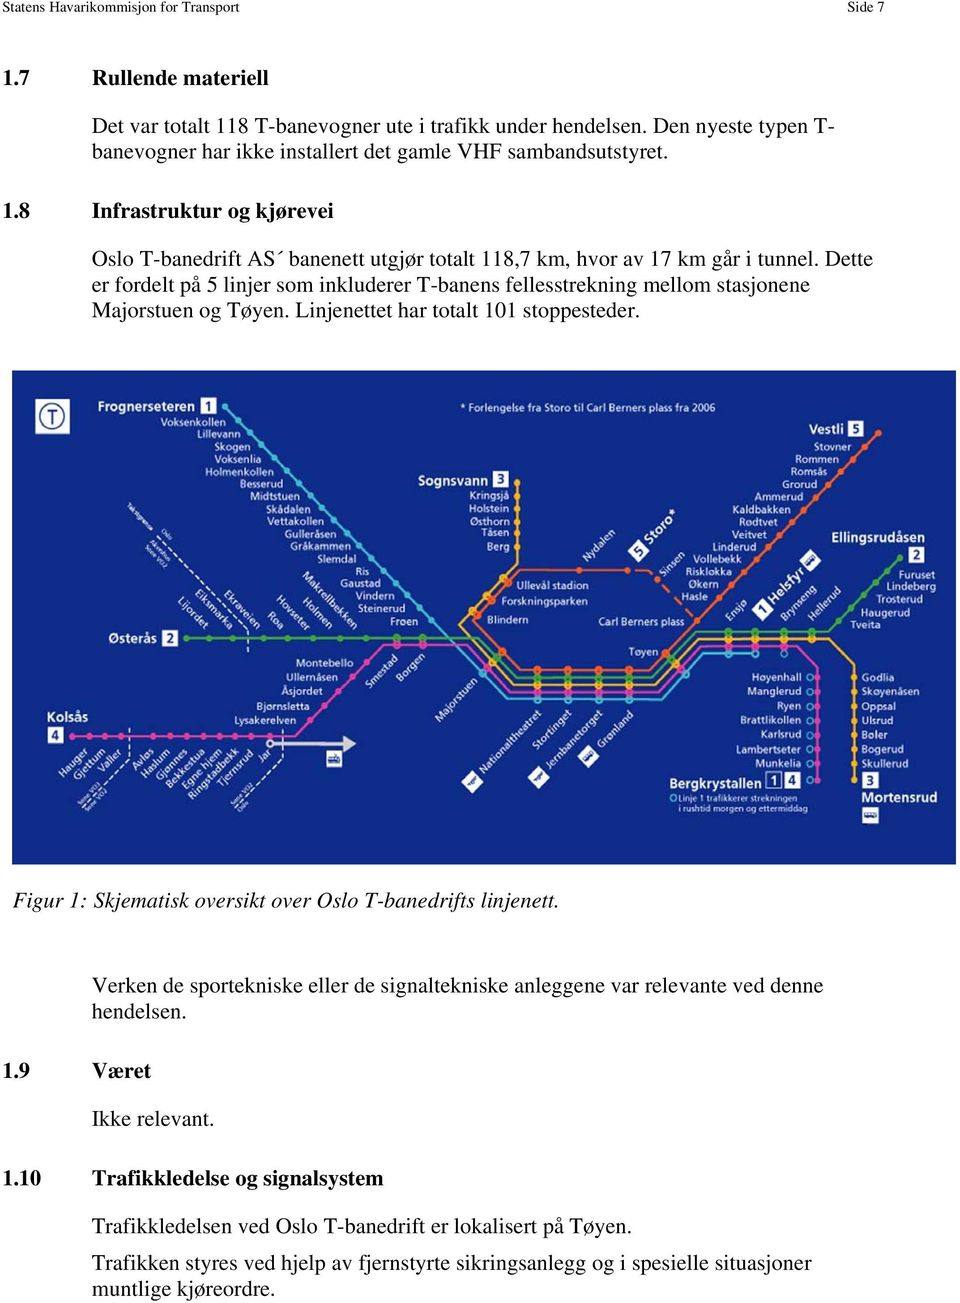 Dette er fordelt på 5 linjer som inkluderer T-banens fellesstrekning mellom stasjonene Majorstuen og Tøyen. Linjenettet har totalt 101 stoppesteder.